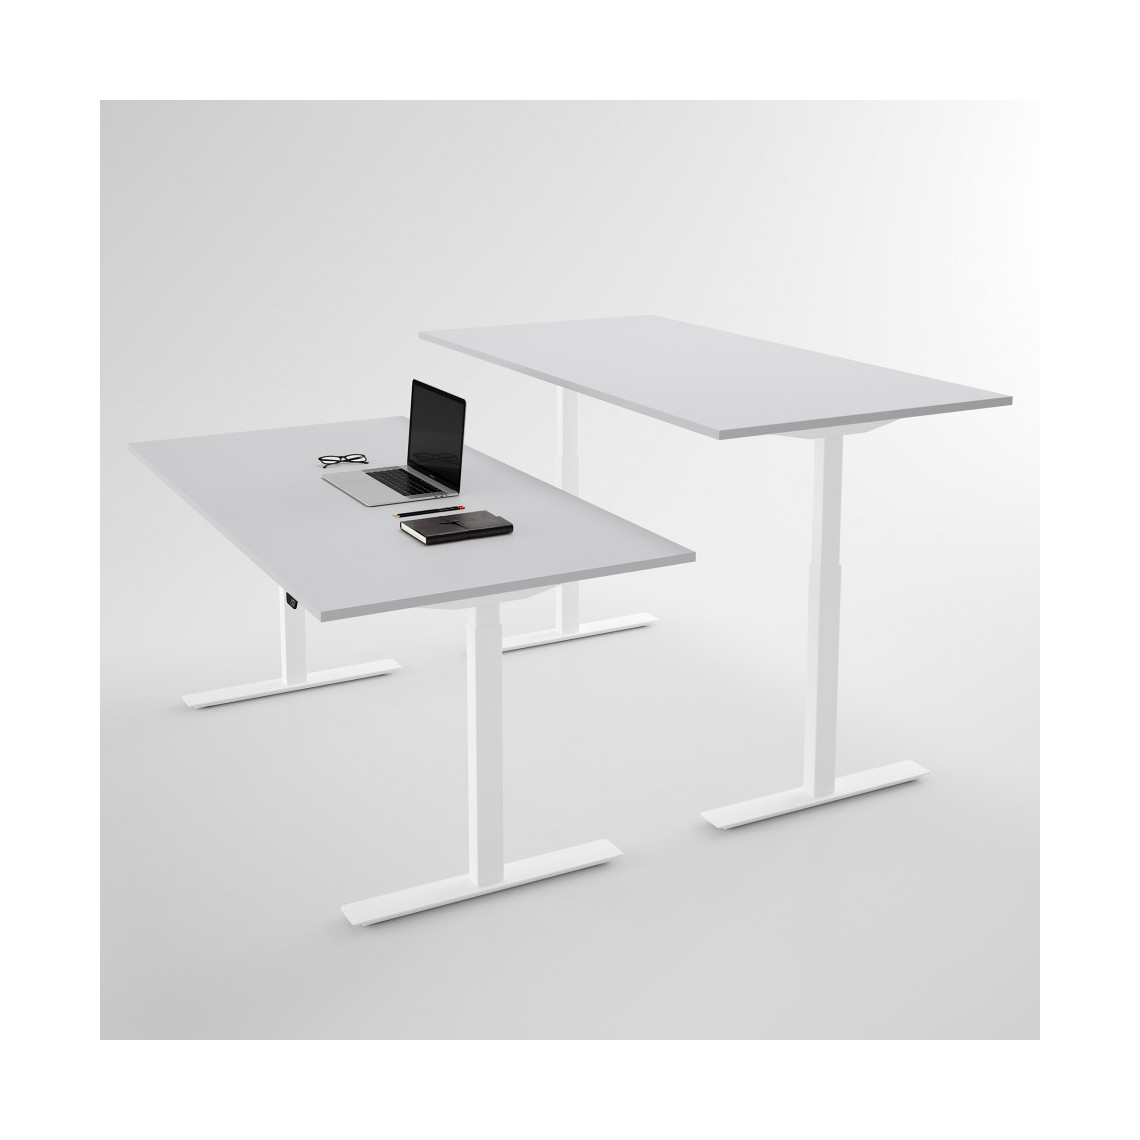 Hæve sænkebord - Pro3, Størrelse 120x60 cm, Bordplade Lysegrå, Stativ Hvid